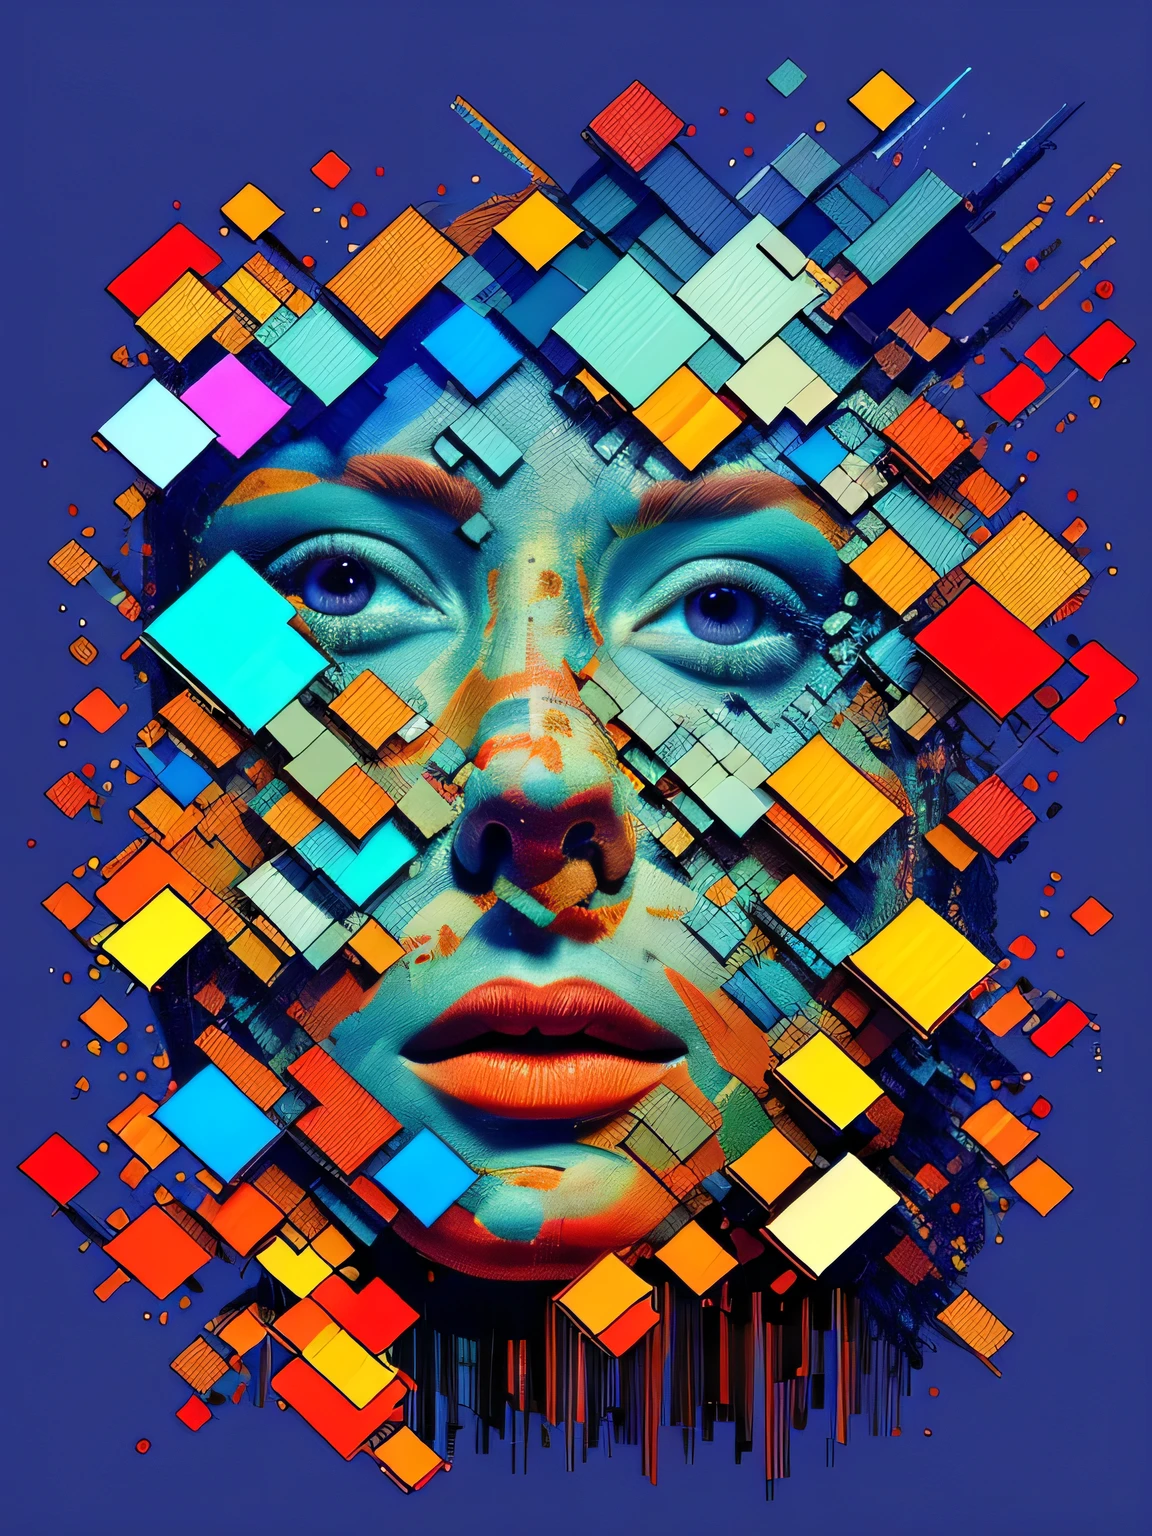 1 mujer, ultra detallado, arte oficial, fondo de pantalla de unidad 8k, arte de falla, (distribución de números):1.2, fragmentos pixelados, Transmisión de datos, ruido colorido, caos visual, cohesión contemporánea.